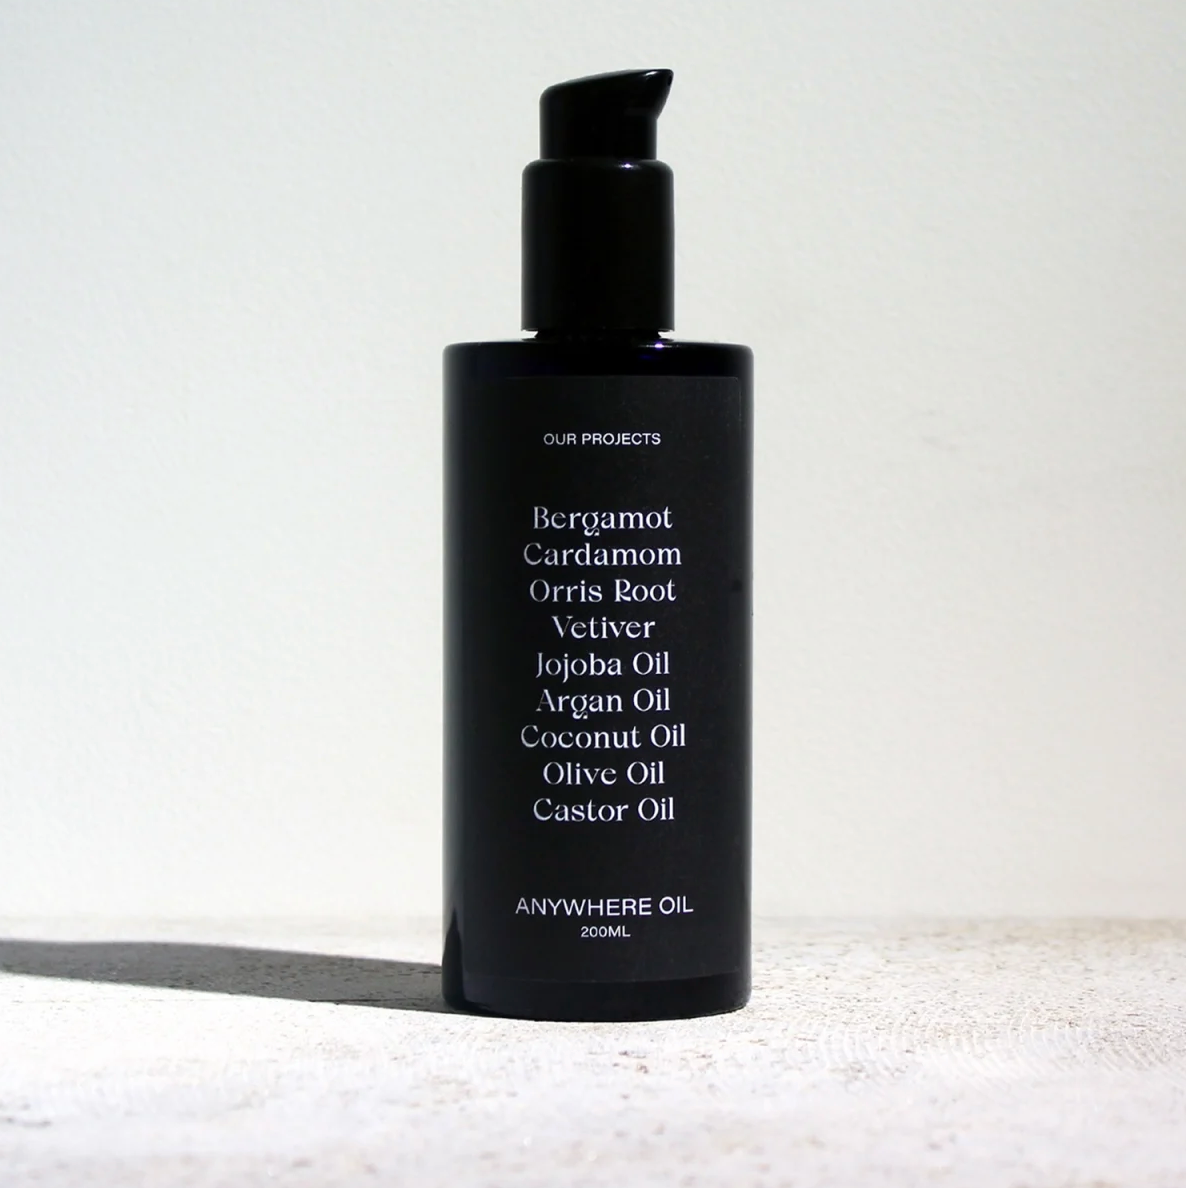 Anywhere Oil Cardamom - Body, Face & Hair Oil (200ml)